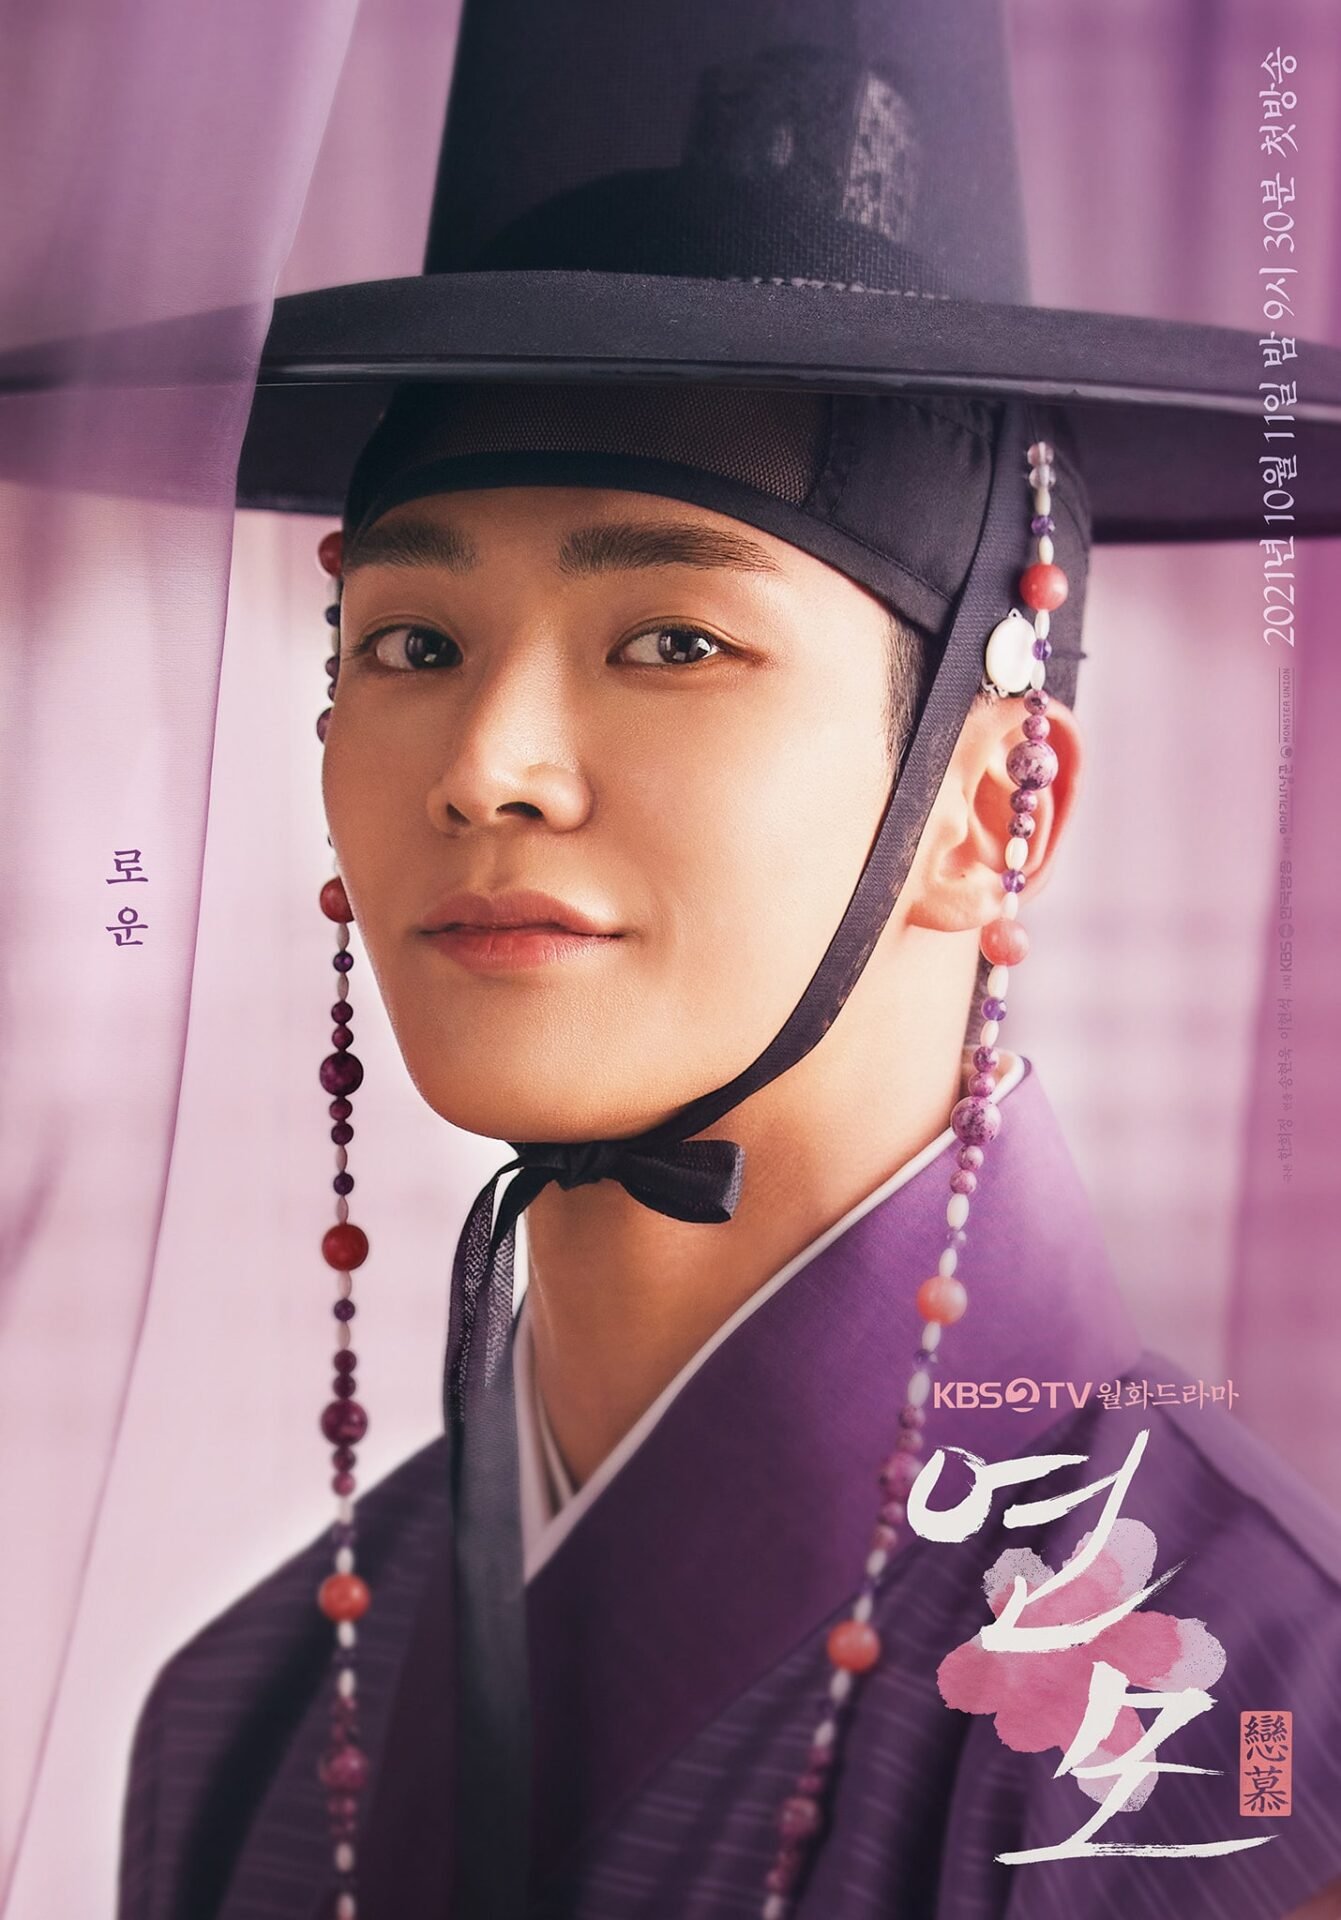 O Rei de Porcelana | Série romântica sul-coreana na Netflix com Park Eun-bin e RoWoon, integrante do grupo de k-pop SF9